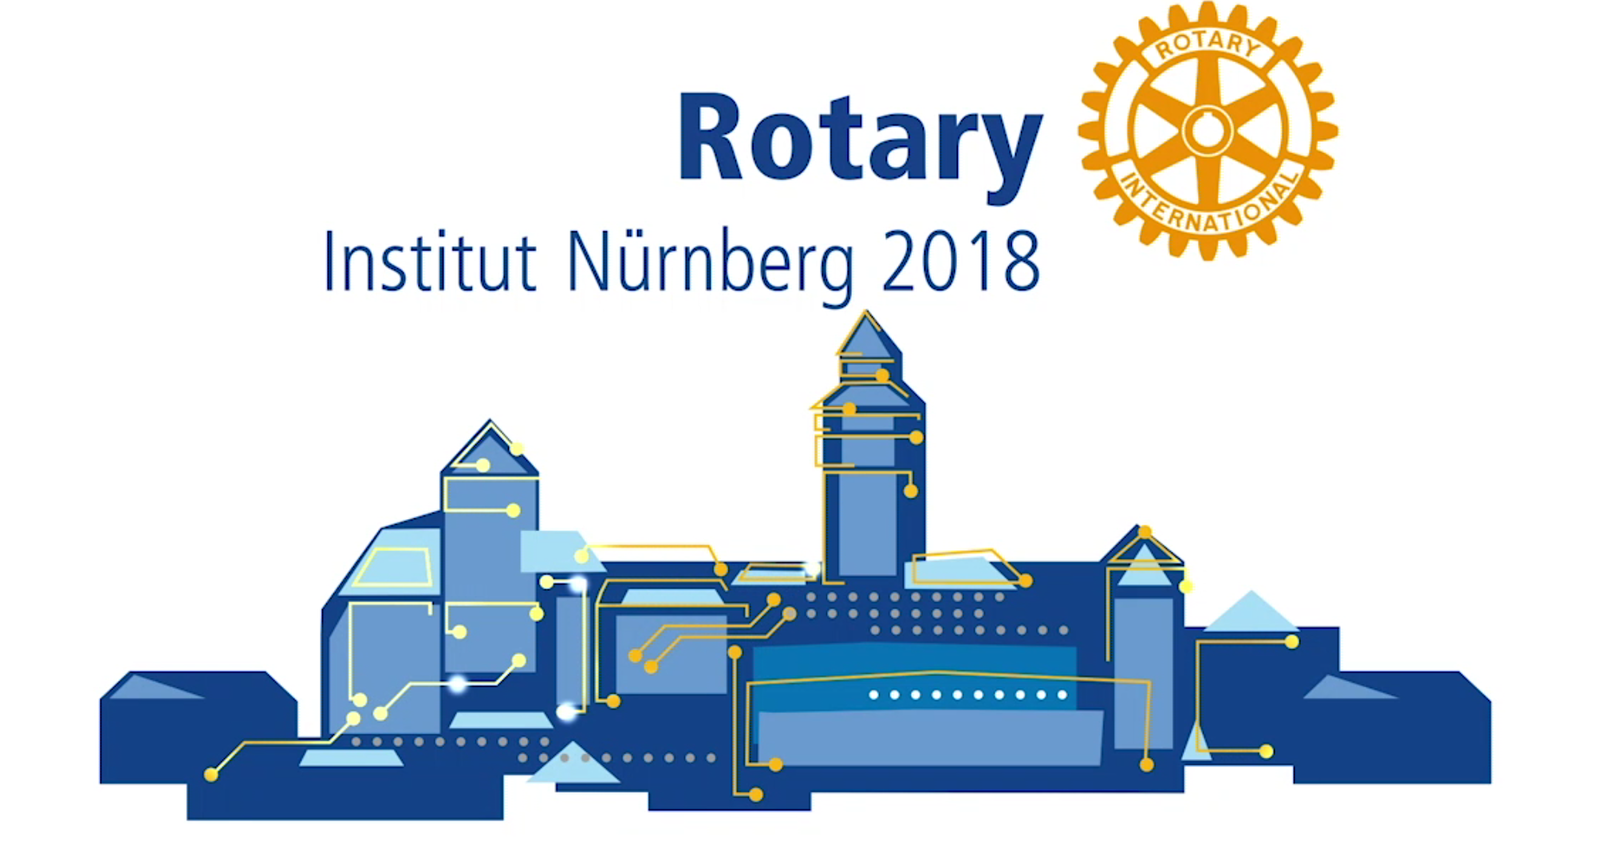 Rotary Institute. Institute, Nürnberg, Nuremberg, Digitalisierung, digital, Iblher